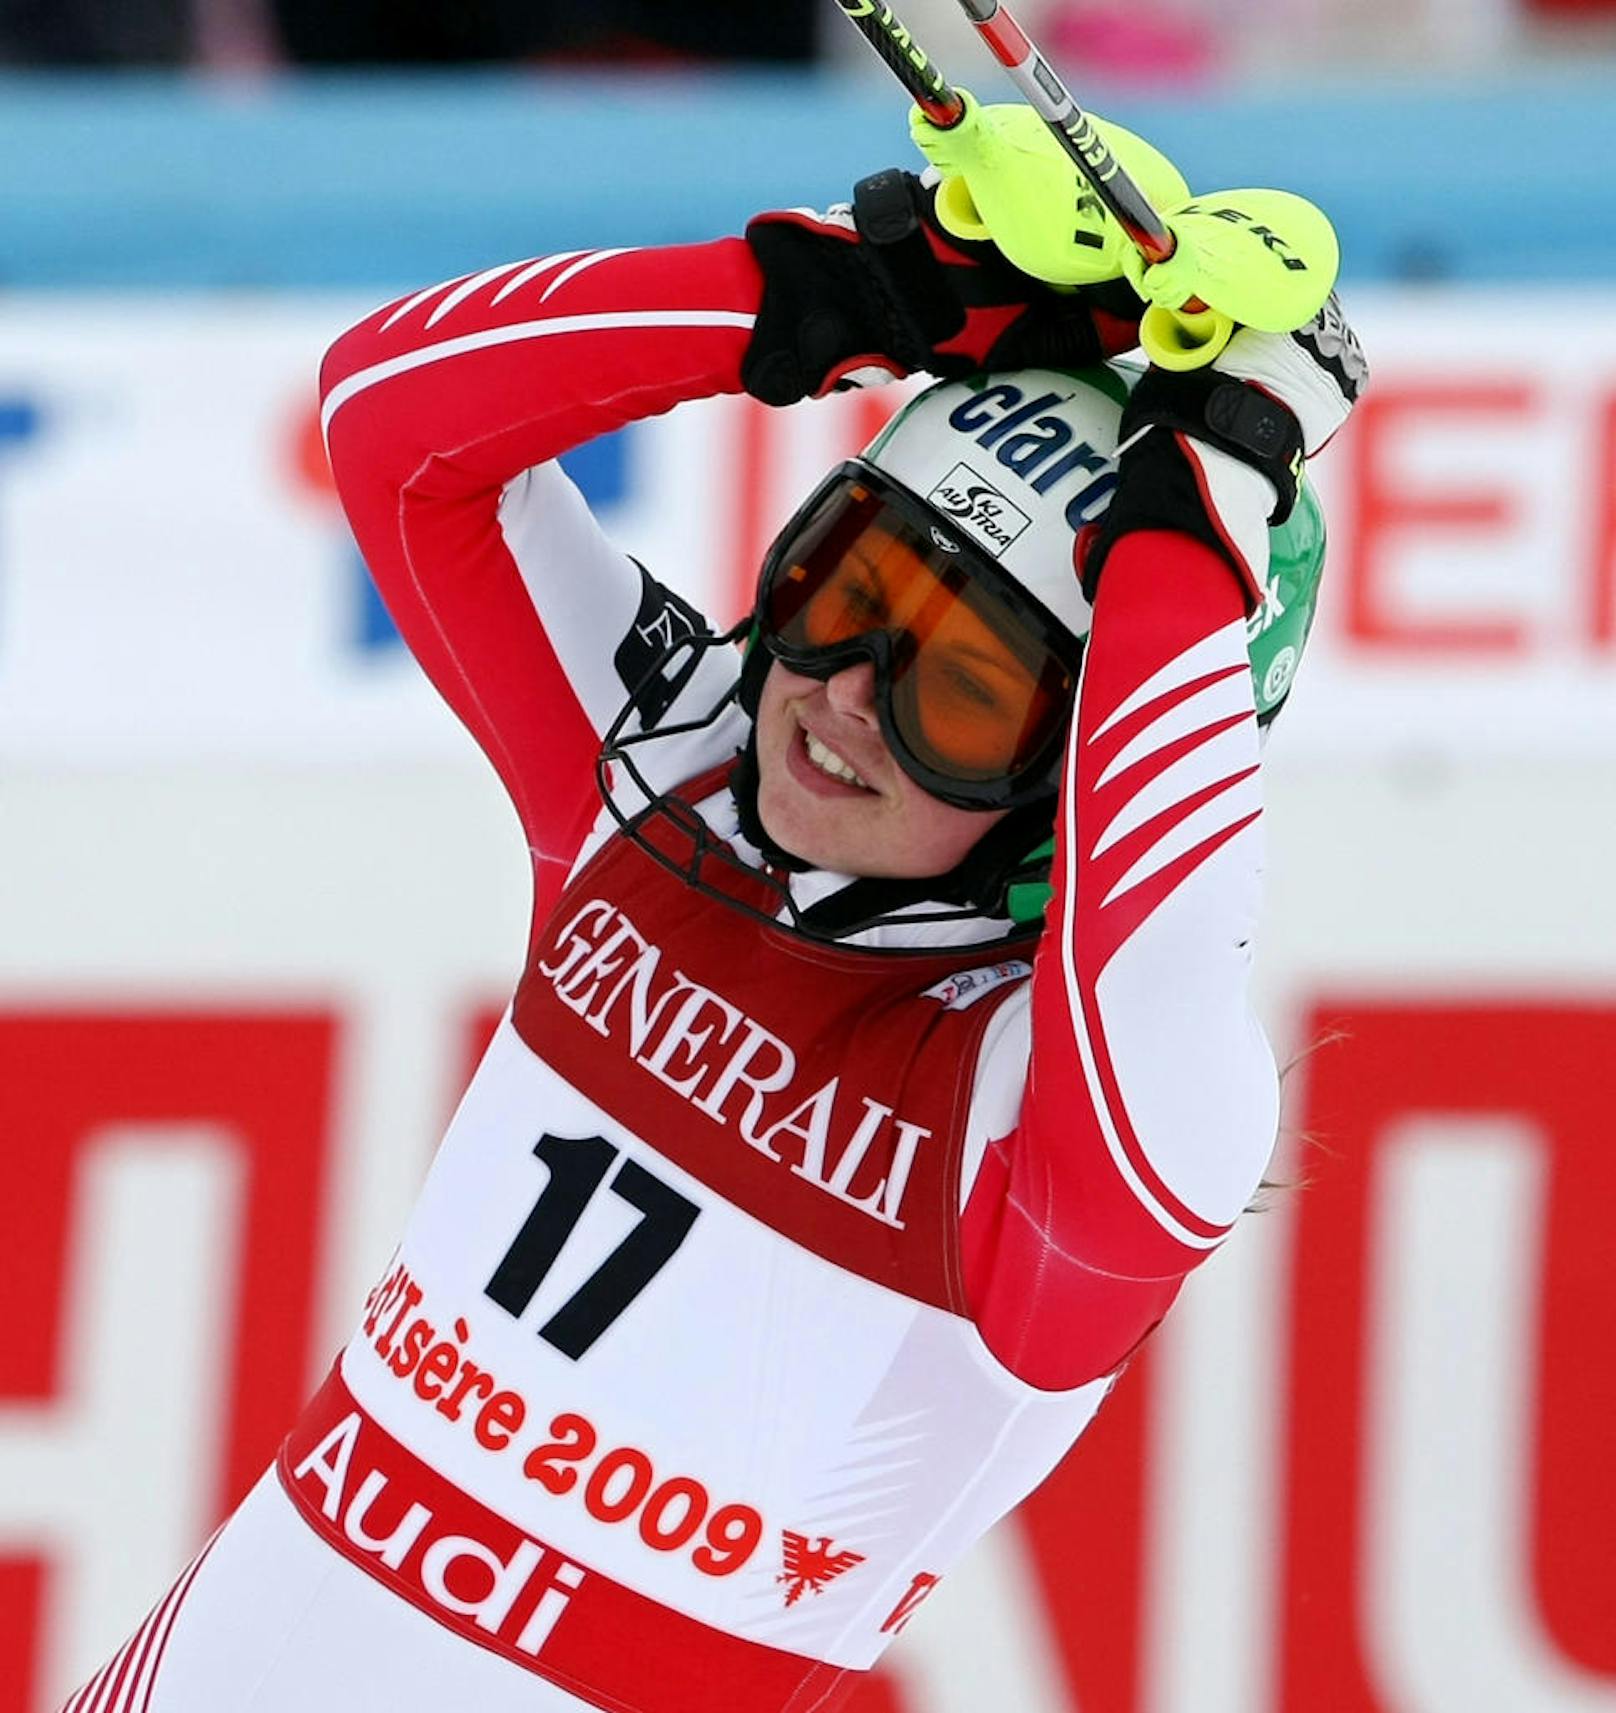 Bei der Ski-WM 2009 in Val d'Isere (FRA) wurde Fenninger Vierte in der Abfahrt und Siebente in der Super-Kombi. Die erhoffte Medaille blieb trotz starker Leistungen aus.